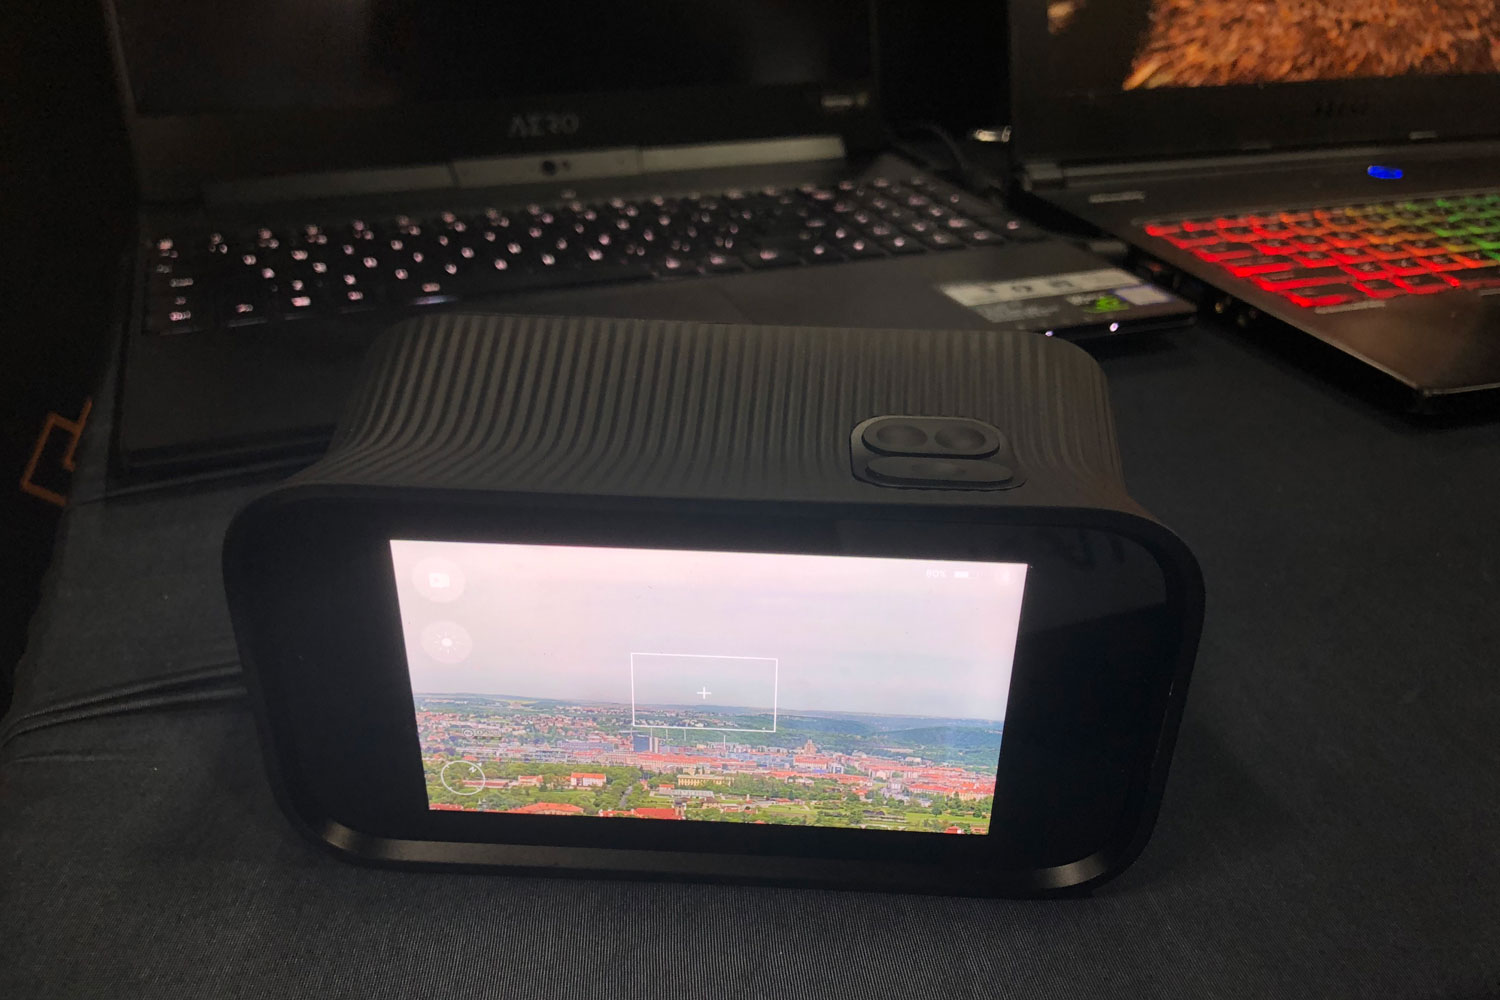 nexoptic doubletake digital binocular ces 2019 binoculars 5